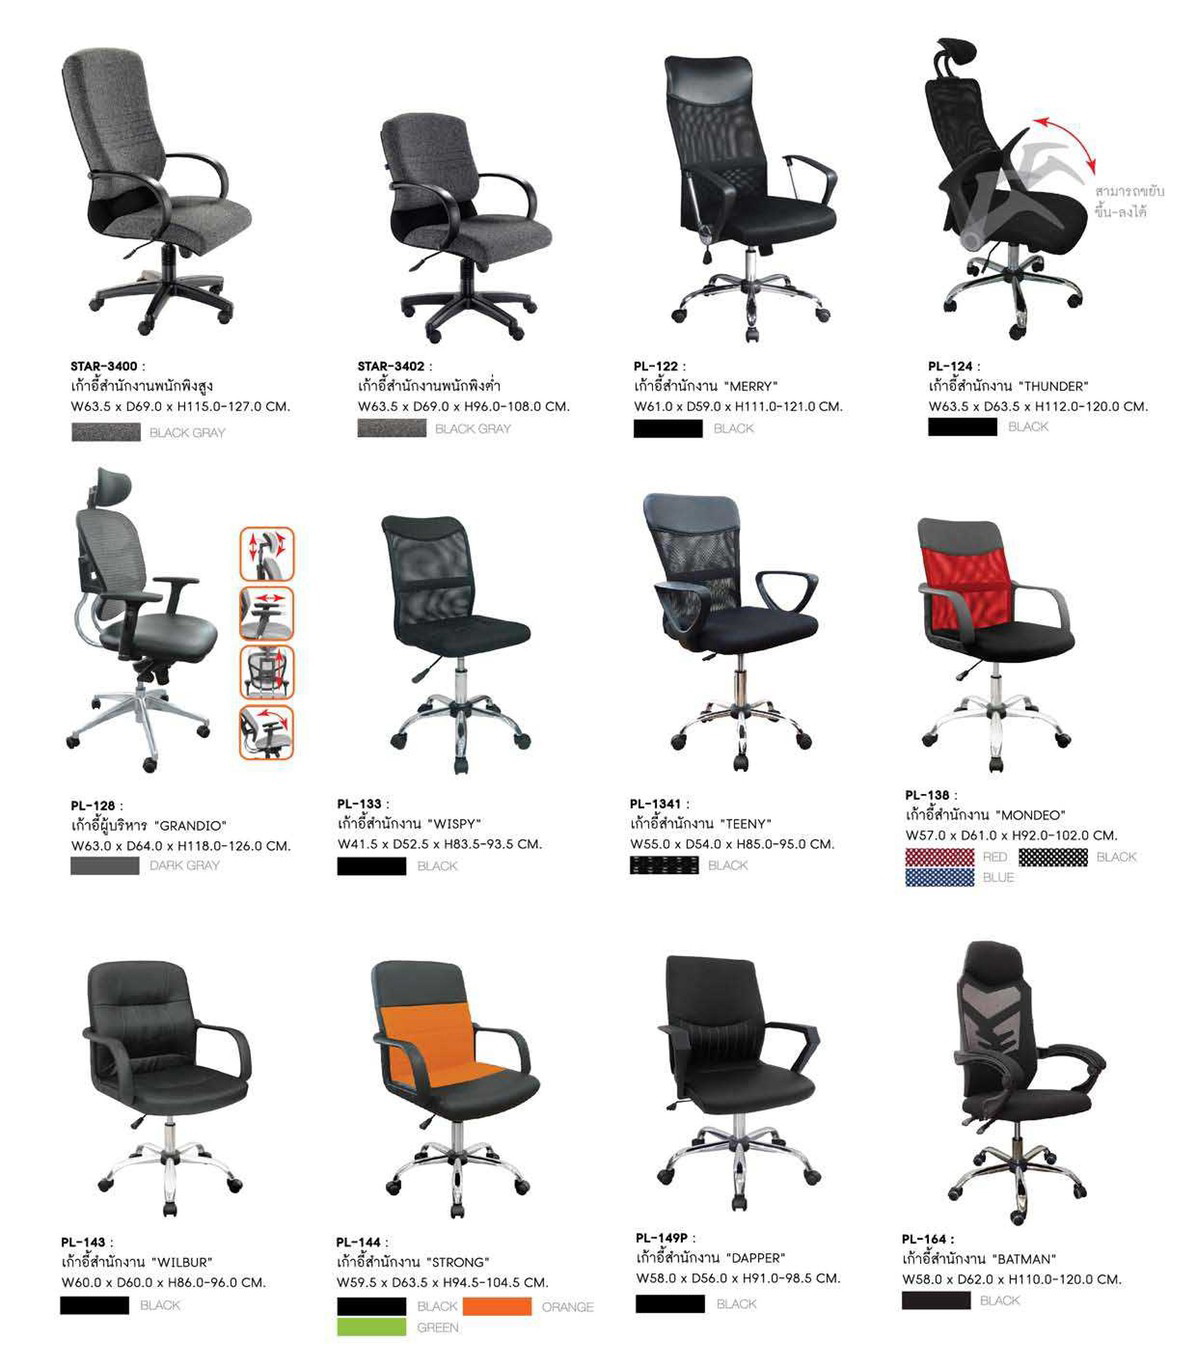 81090::PL-138::เก้าอี้สำนักงาน MONDEO ก750xล610xส920-1020 เบาะผ้าสีดำ พนักพิงมีให้เลือก3สี ดำ,แดง,น้ำเงิน  เก้าอี้สำนักงาน SURE